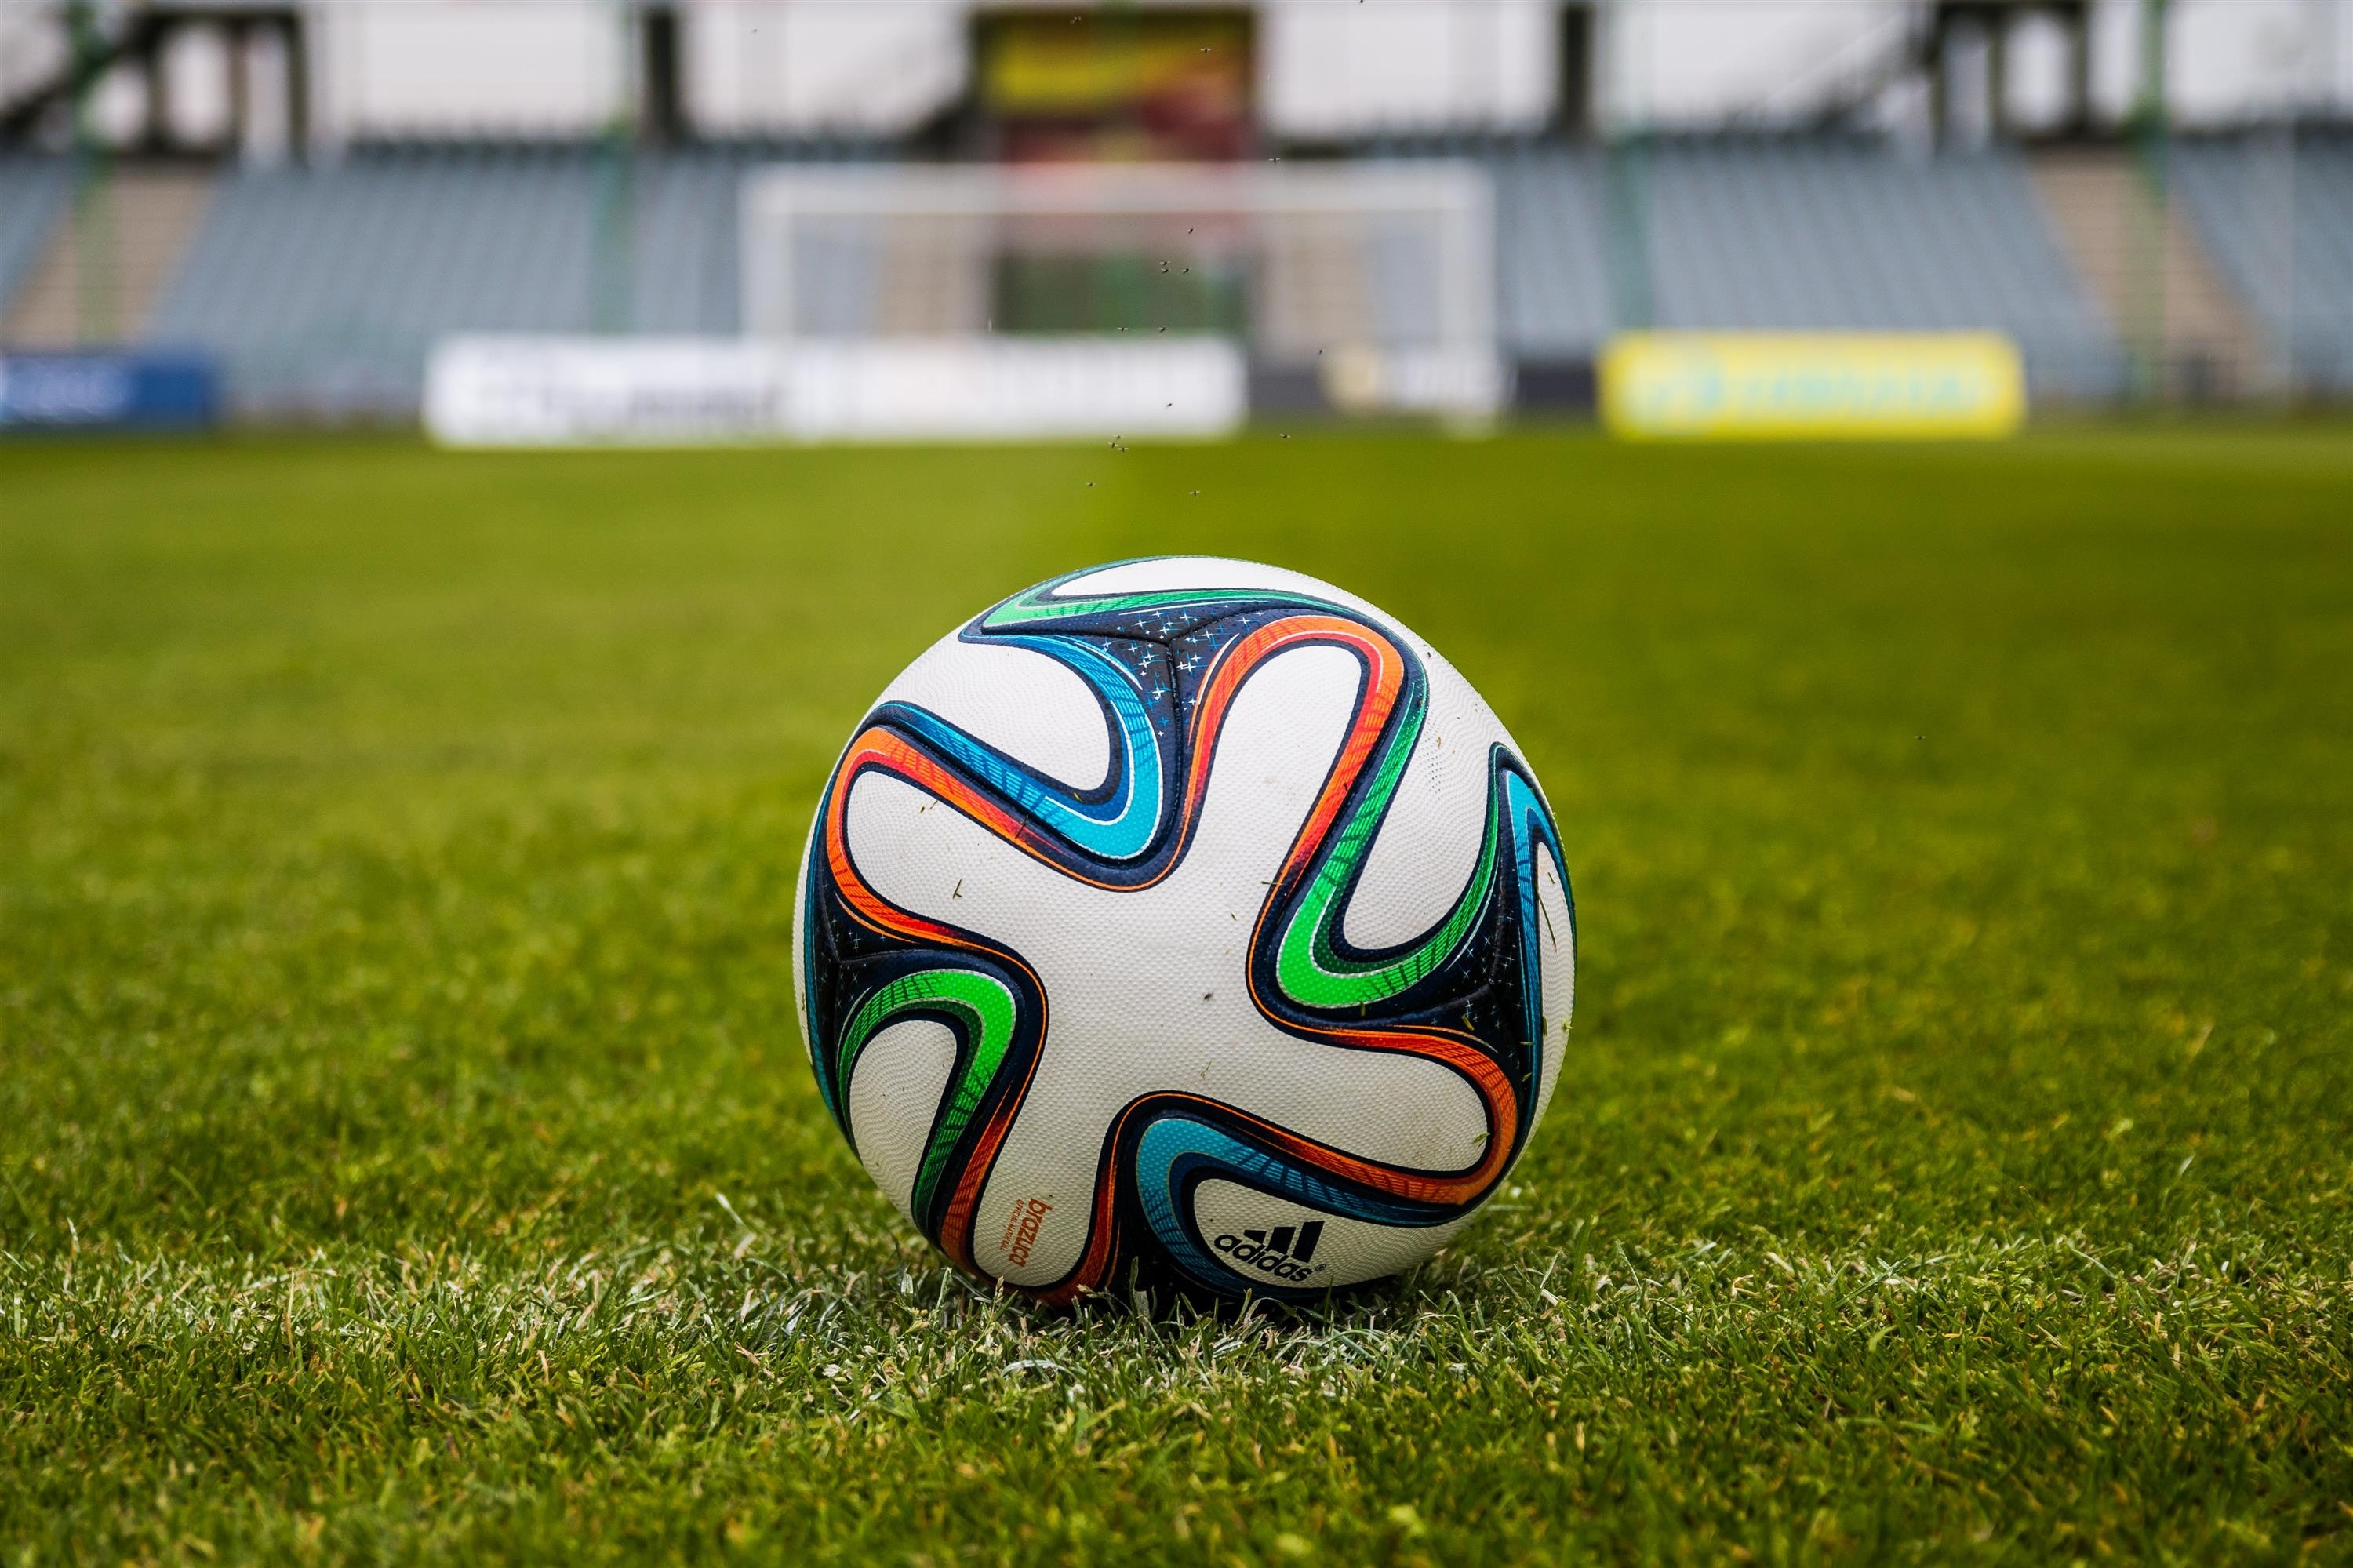 Adidas Soccer Ball on Grass Open Field · Free